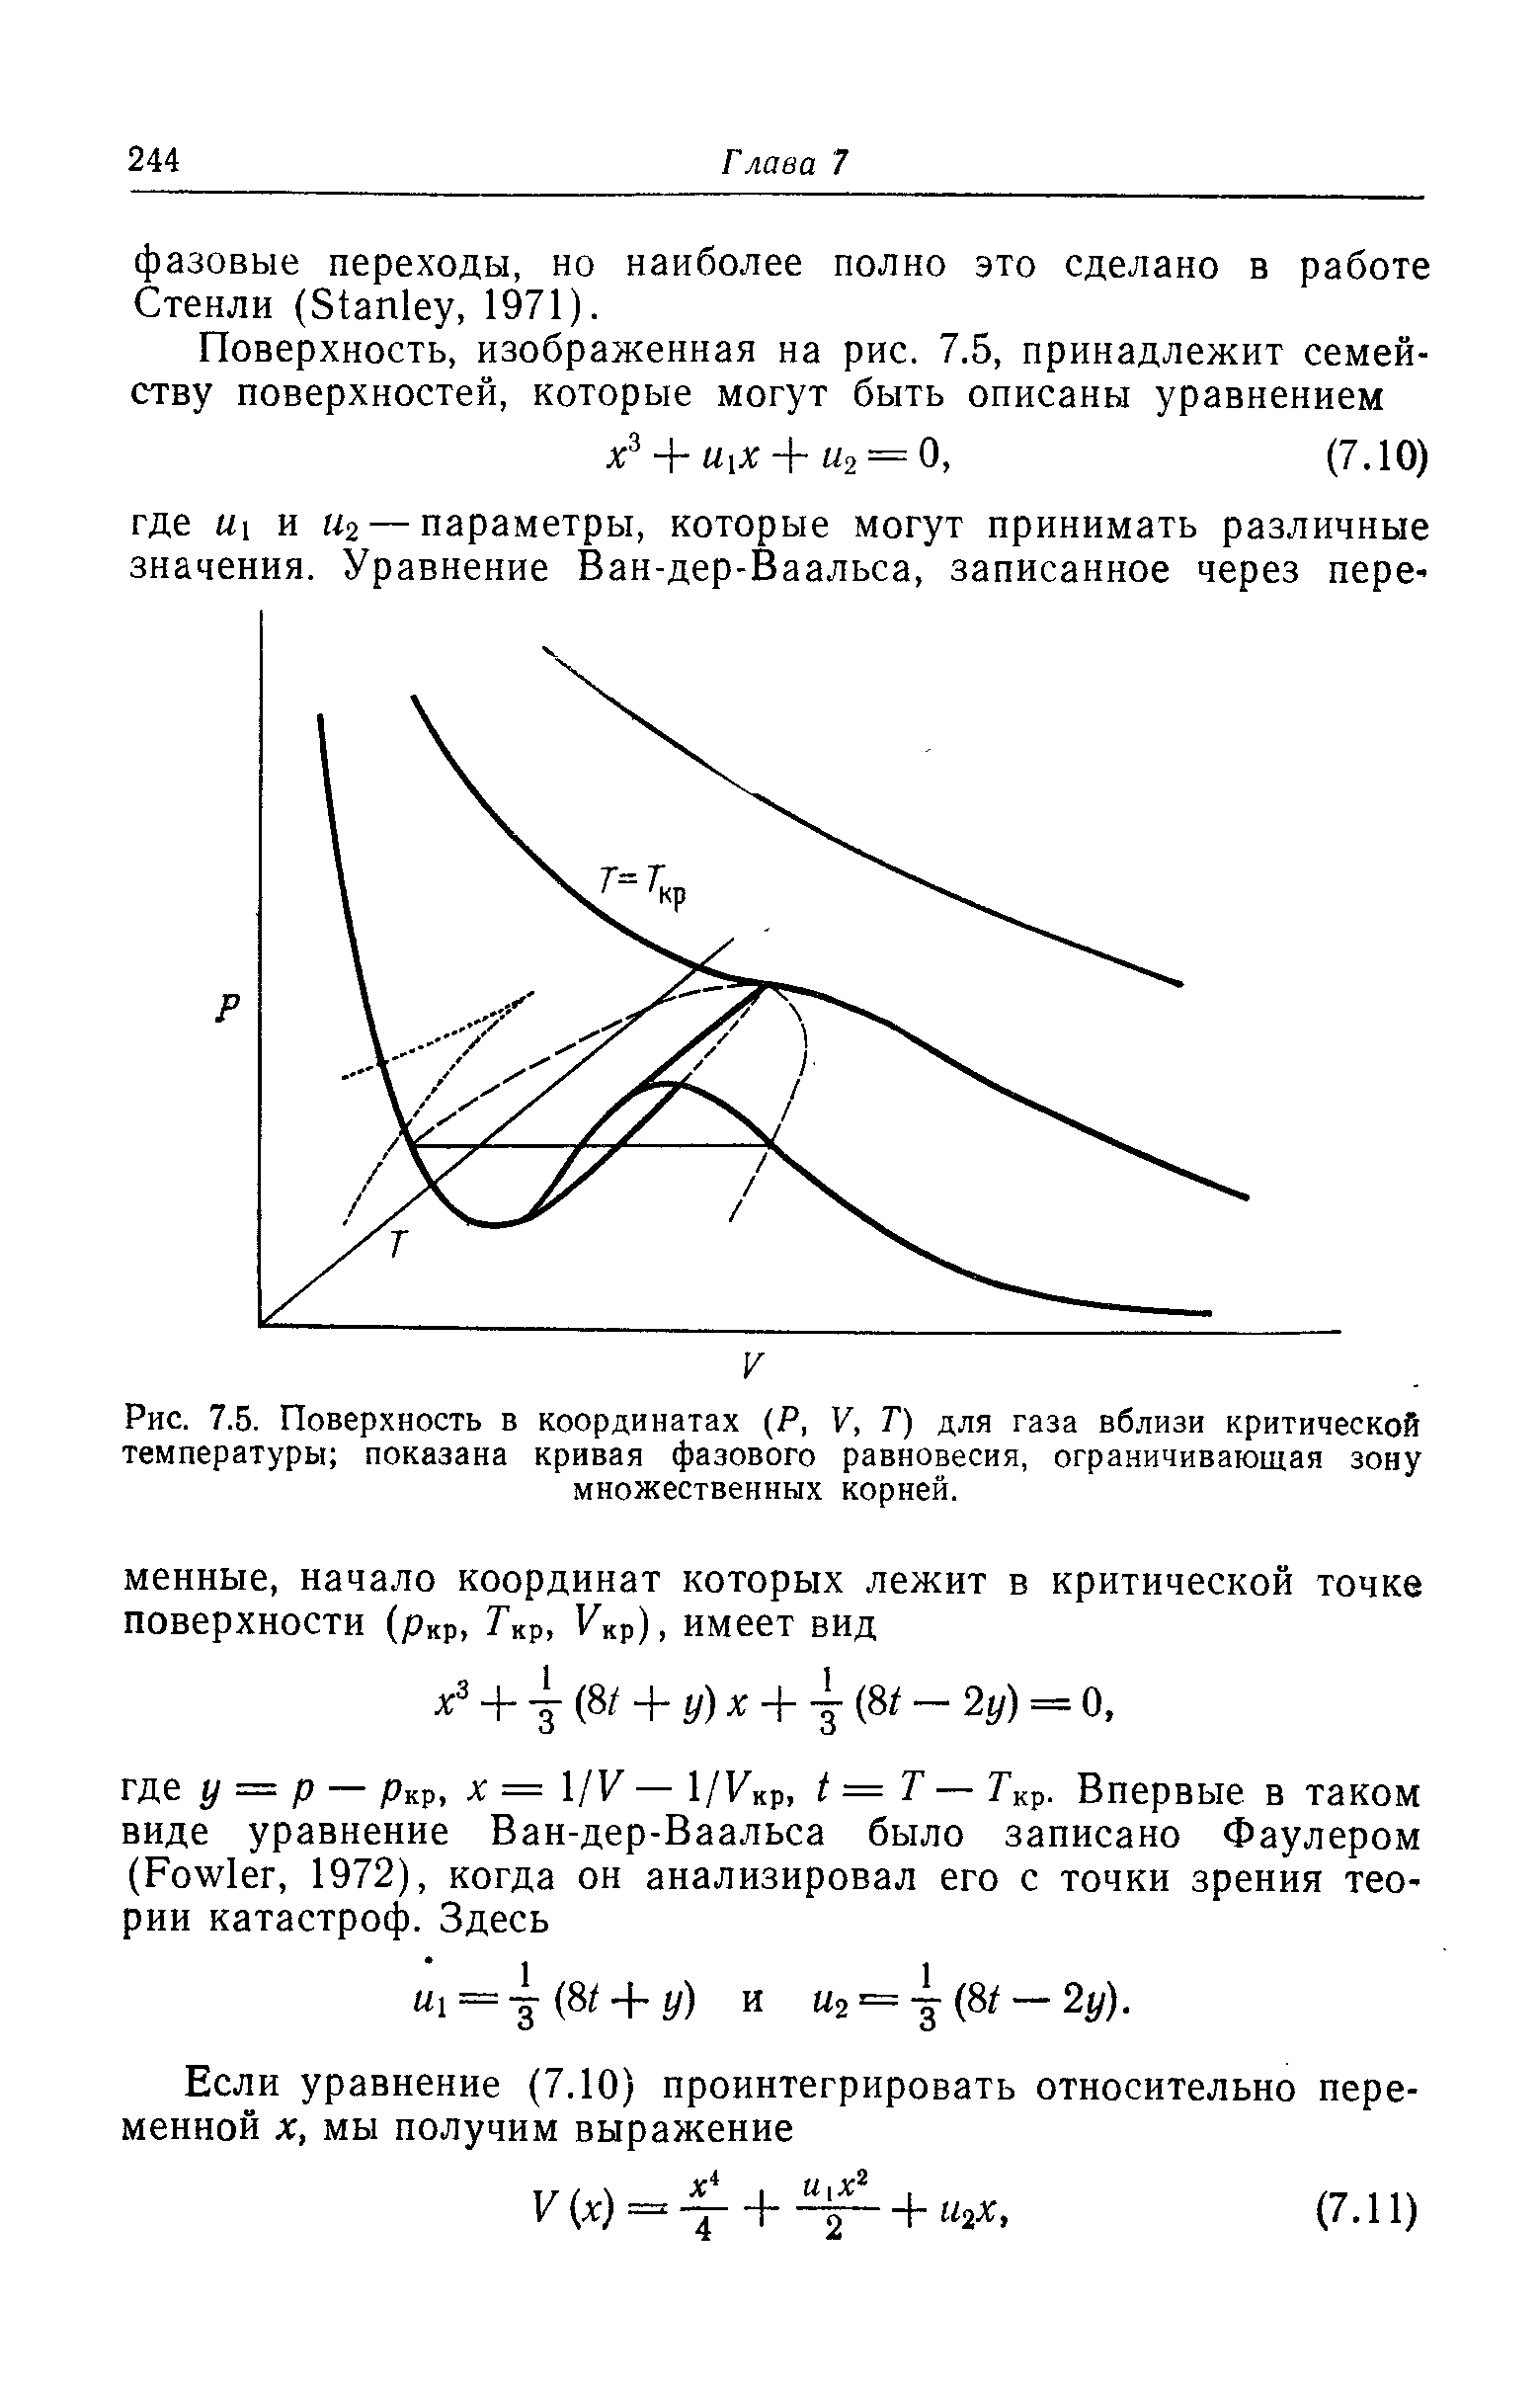 Рис. 7.5. Поверхность в координатах (Р, V, Т) для газа вблизи критической температуры показана кривая фазового равновесия, ограничивающая зону множественных корней.